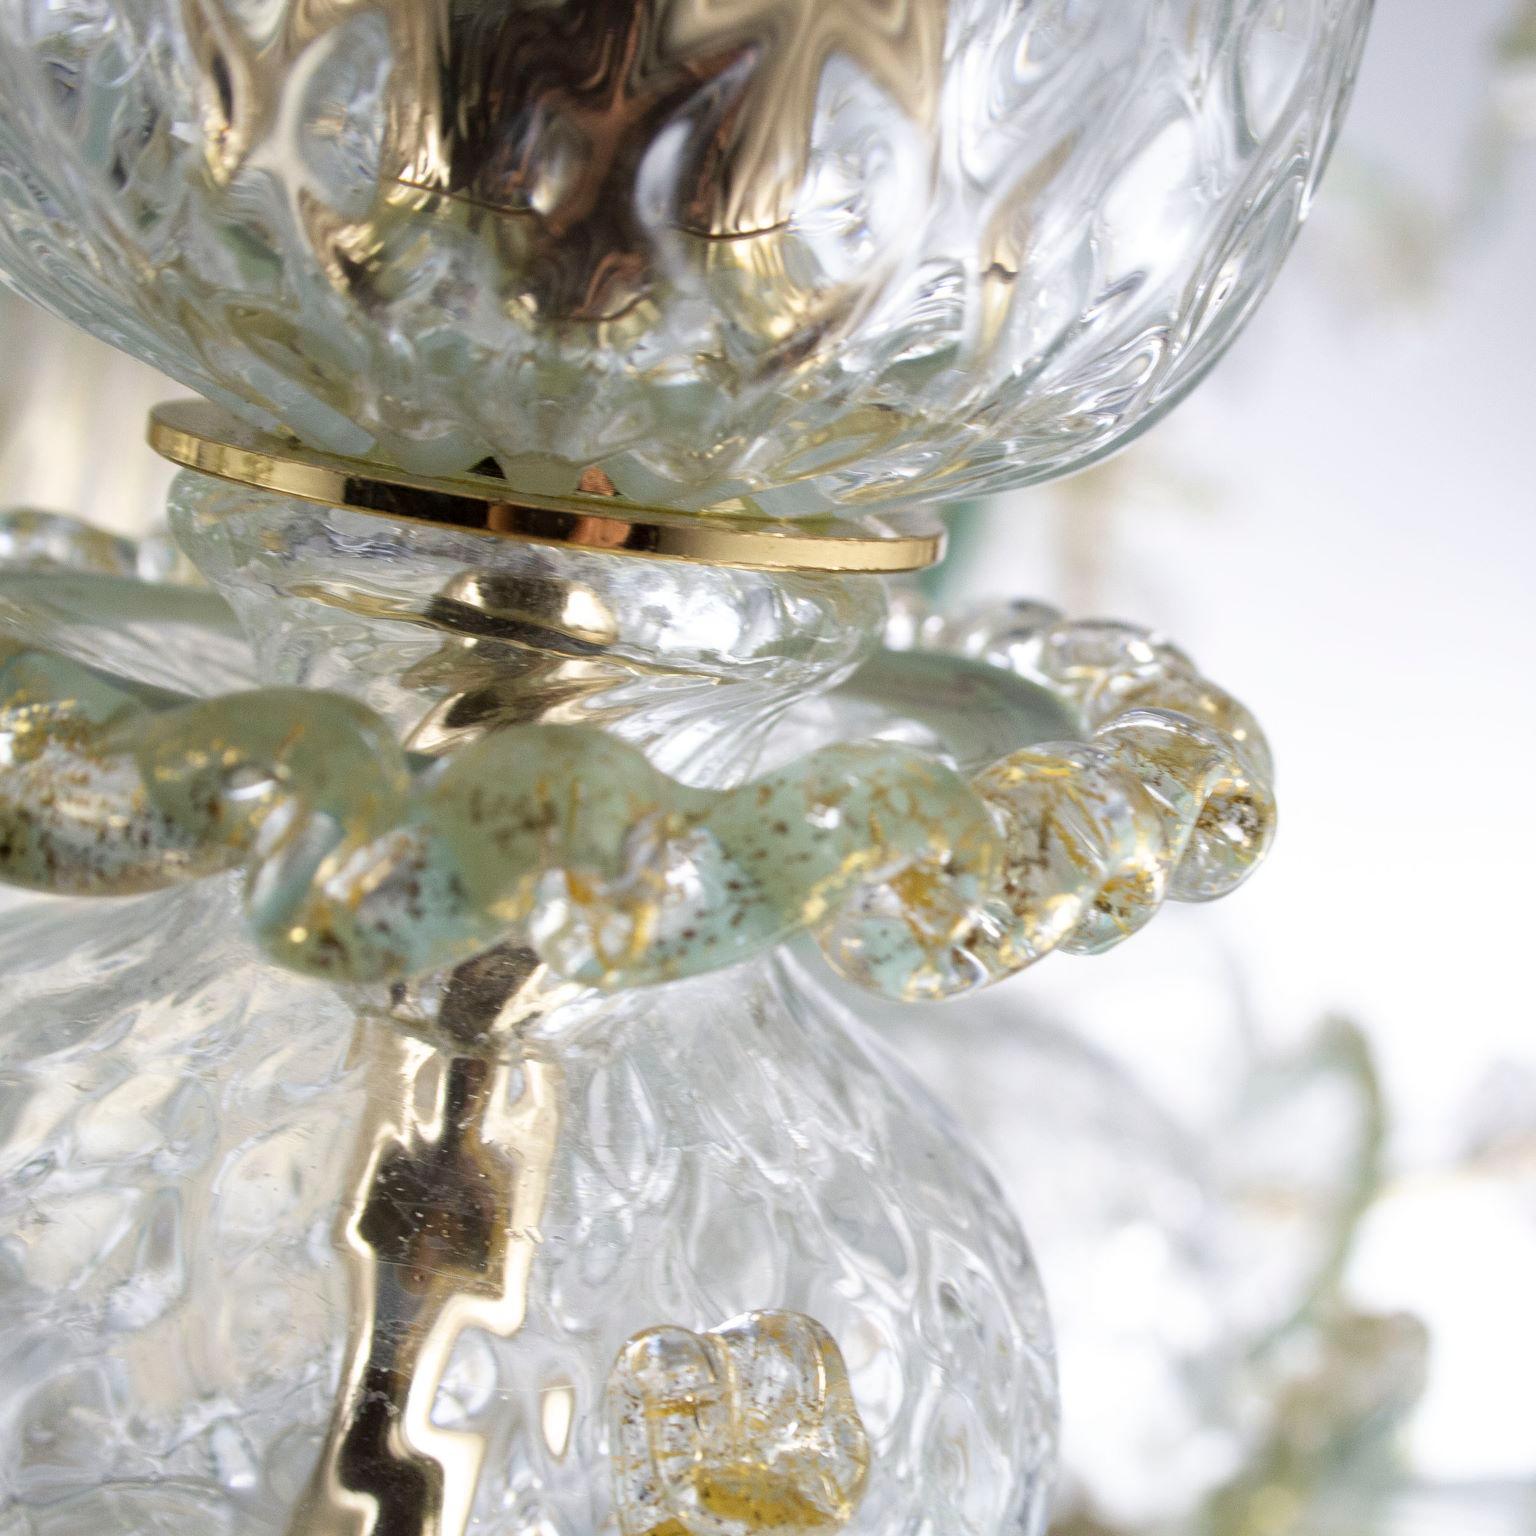 Rezzonico Kronleuchter 10 Arme, Kristall Murano Glas, mit Gold, grau-grüne Farbe Einzelheiten in Glaspaste von Multiforme.
Dieser kunstvolle Glaslüster ist ein elegantes und zartes Beleuchtungsobjekt, das in Pastelltönen gehalten ist. Die Struktur